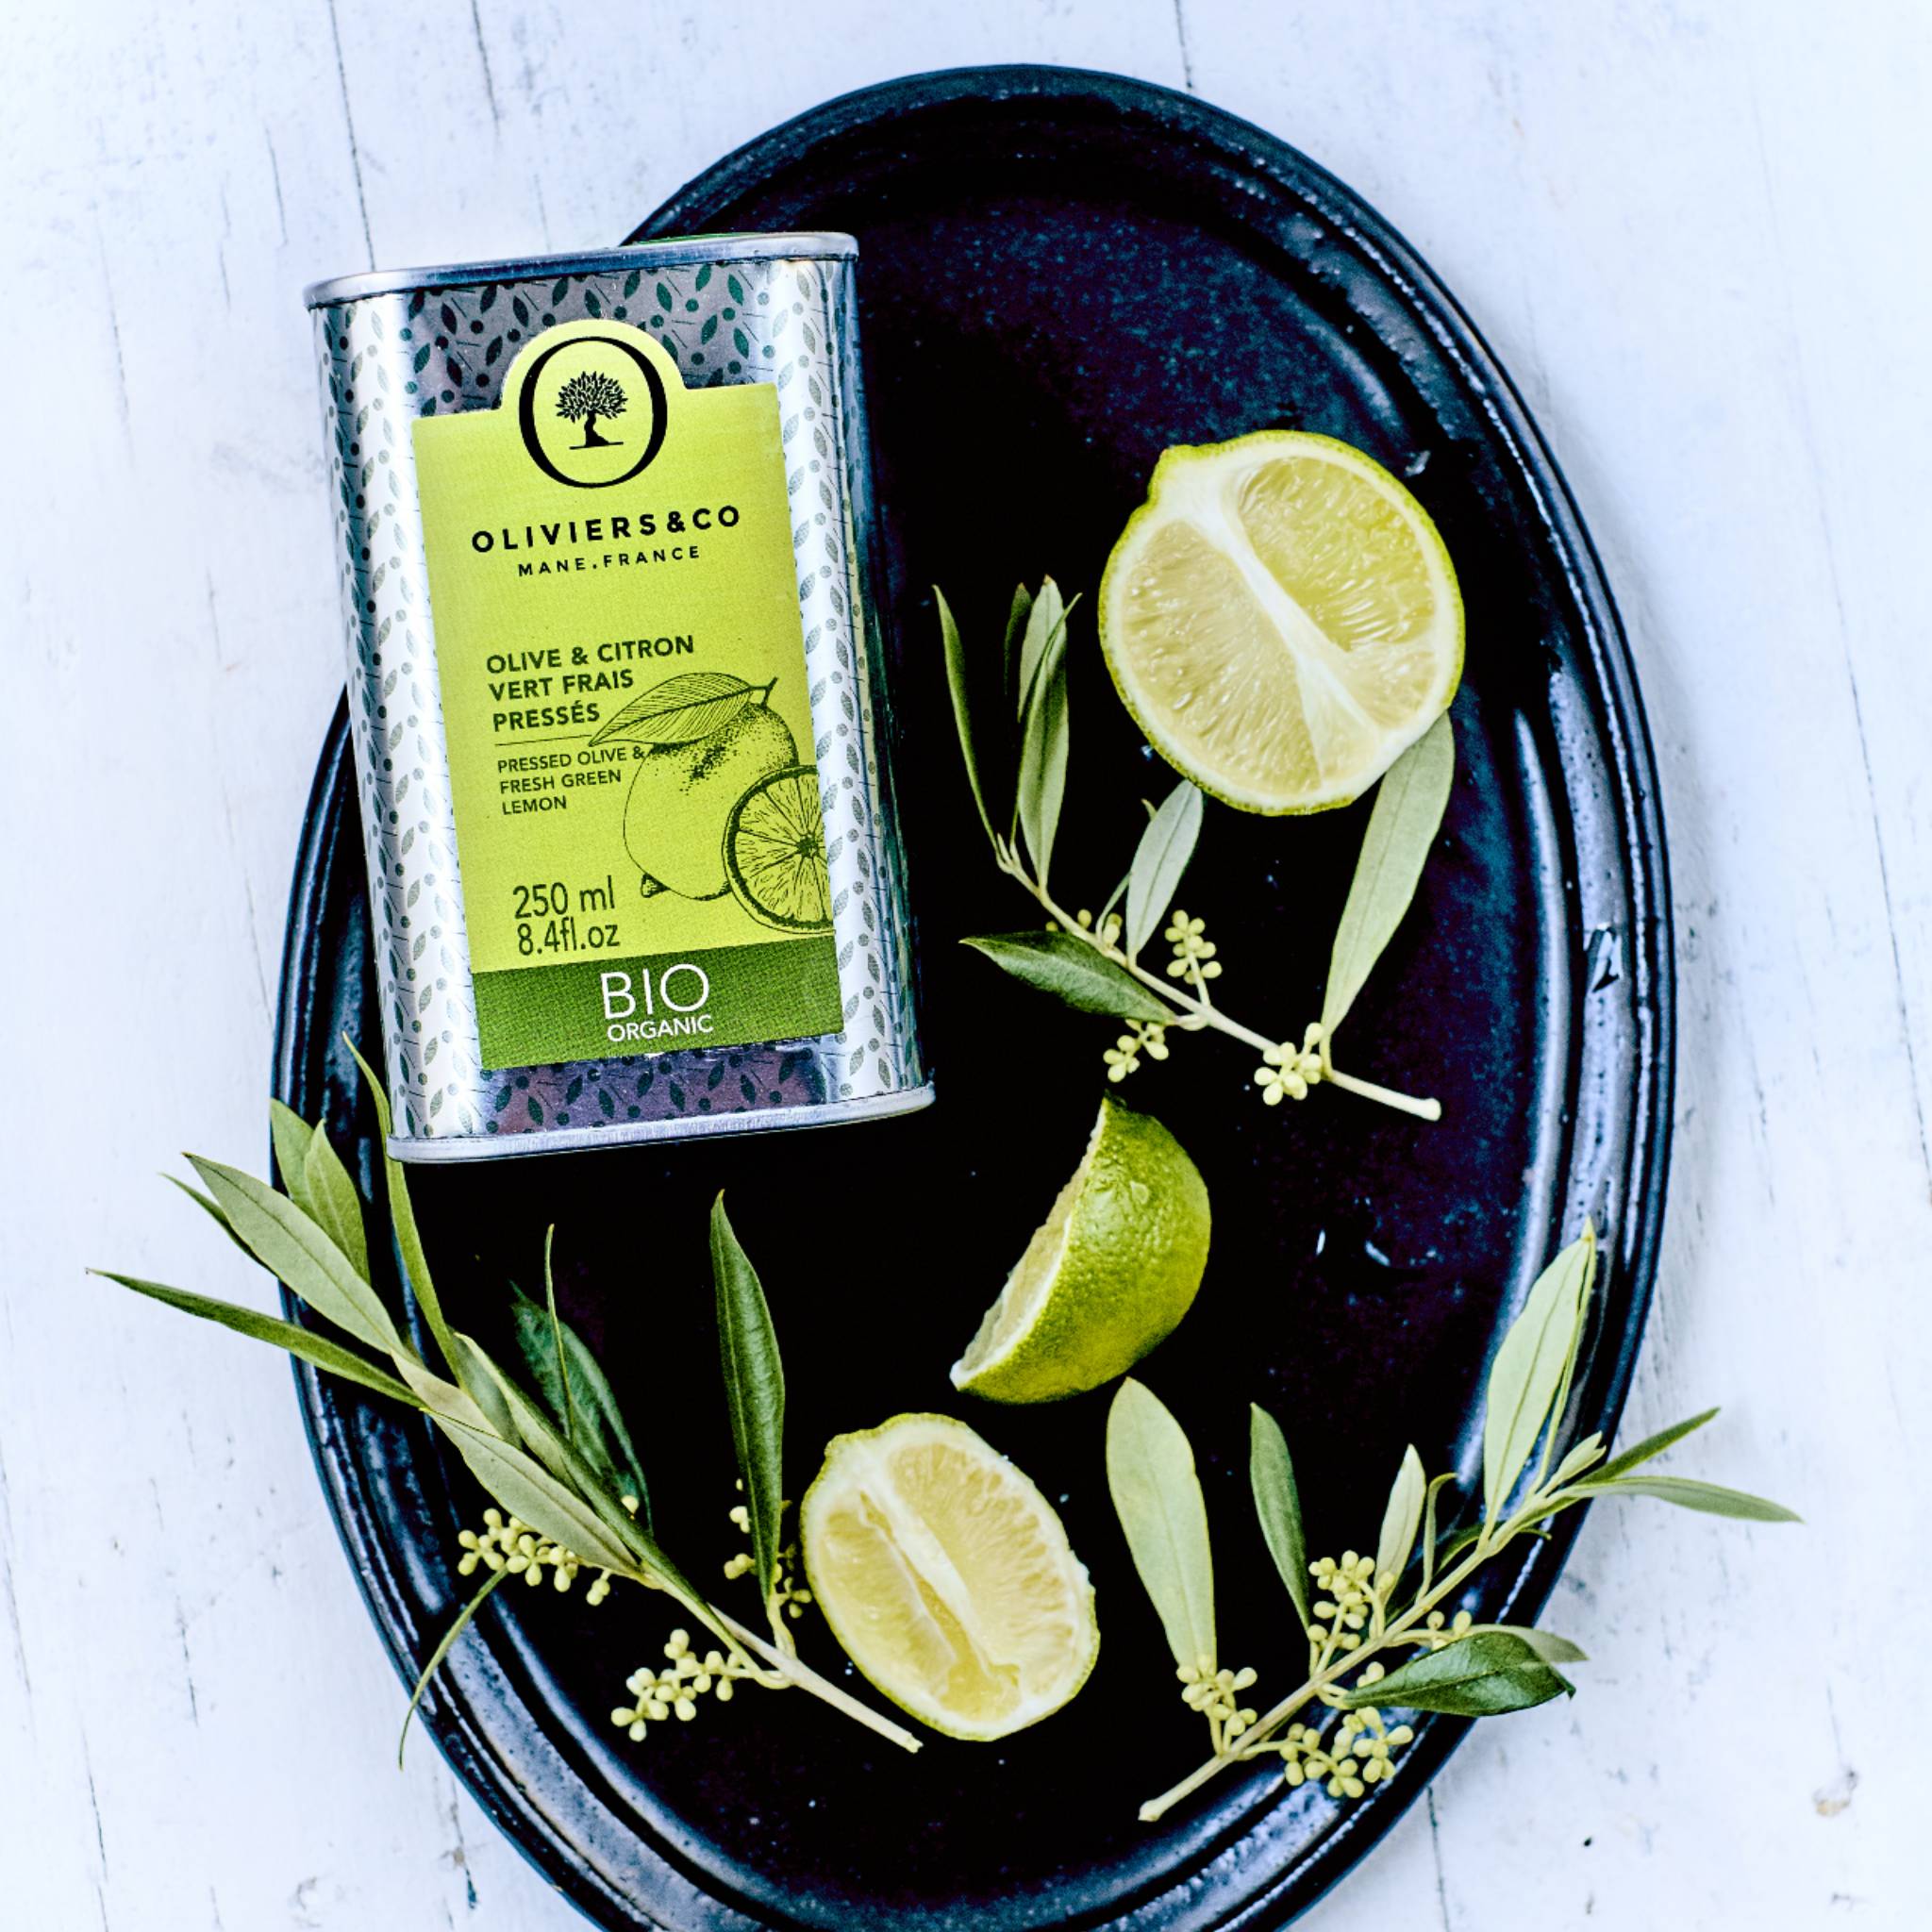 Økologisk olivenolie med grøn citron fra Oliviers & Co